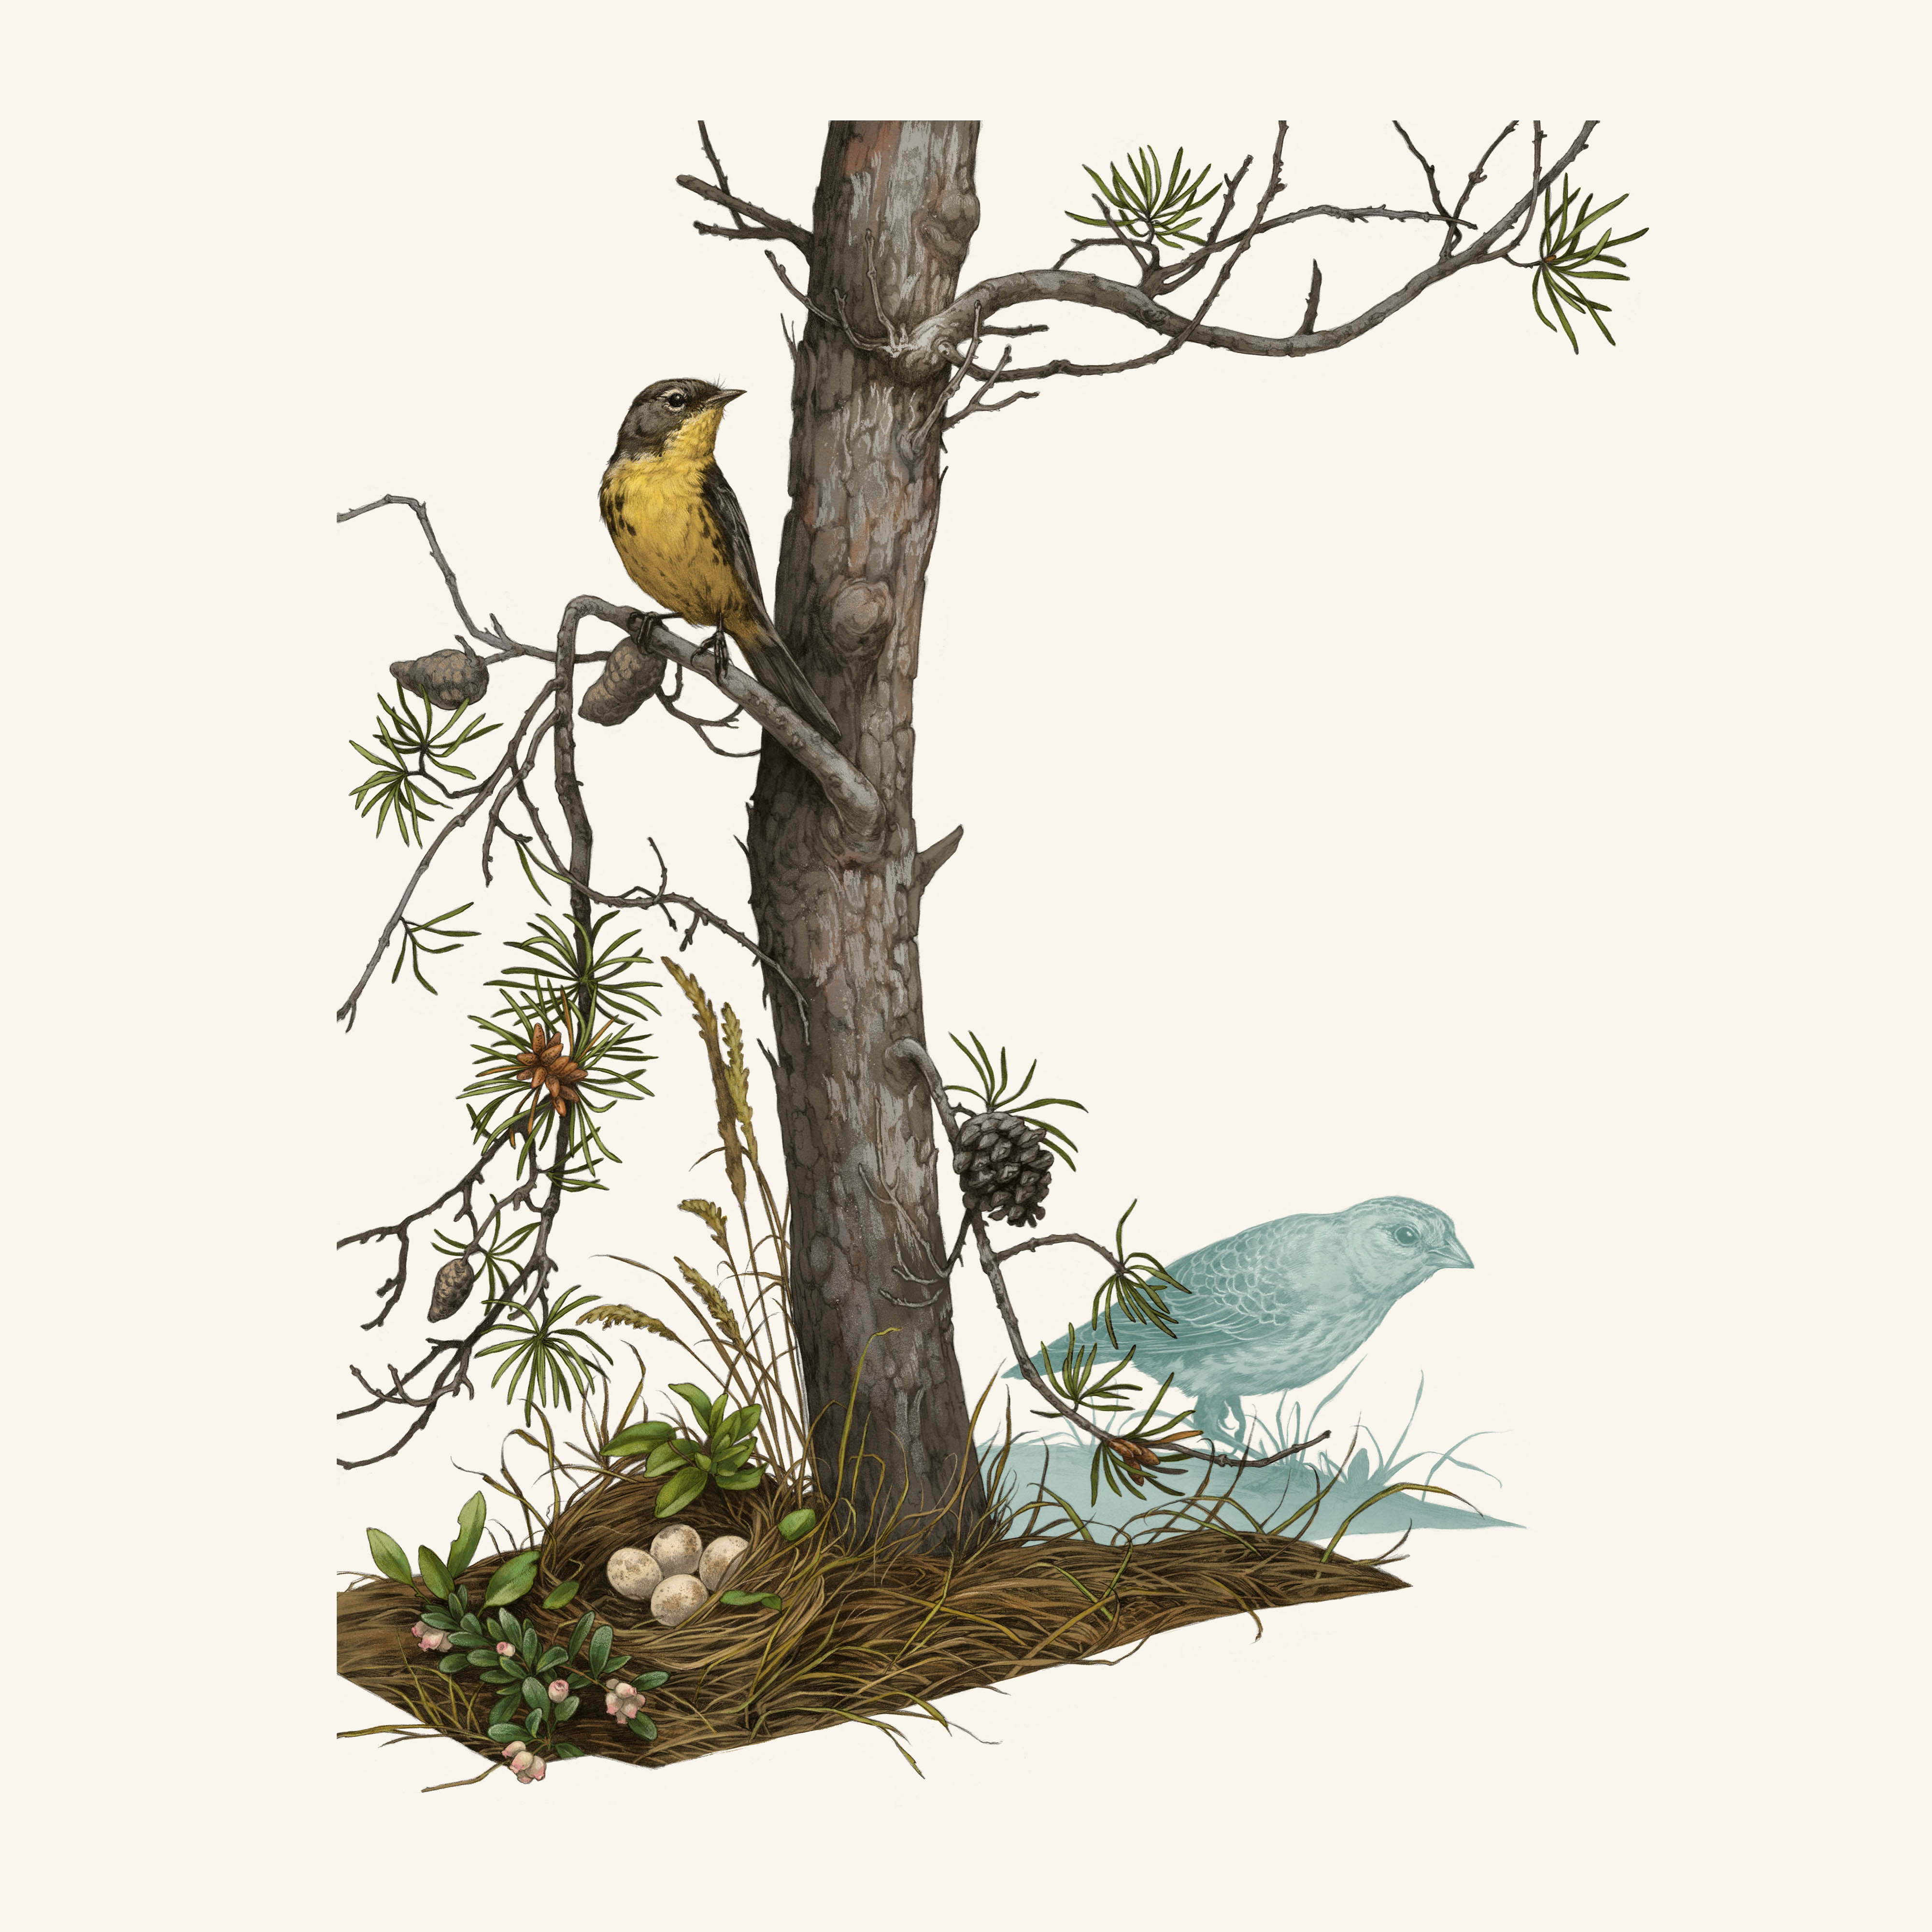 Ilustración de un pájaro amarillo posado en una rama de un árbol de aspecto escaso.